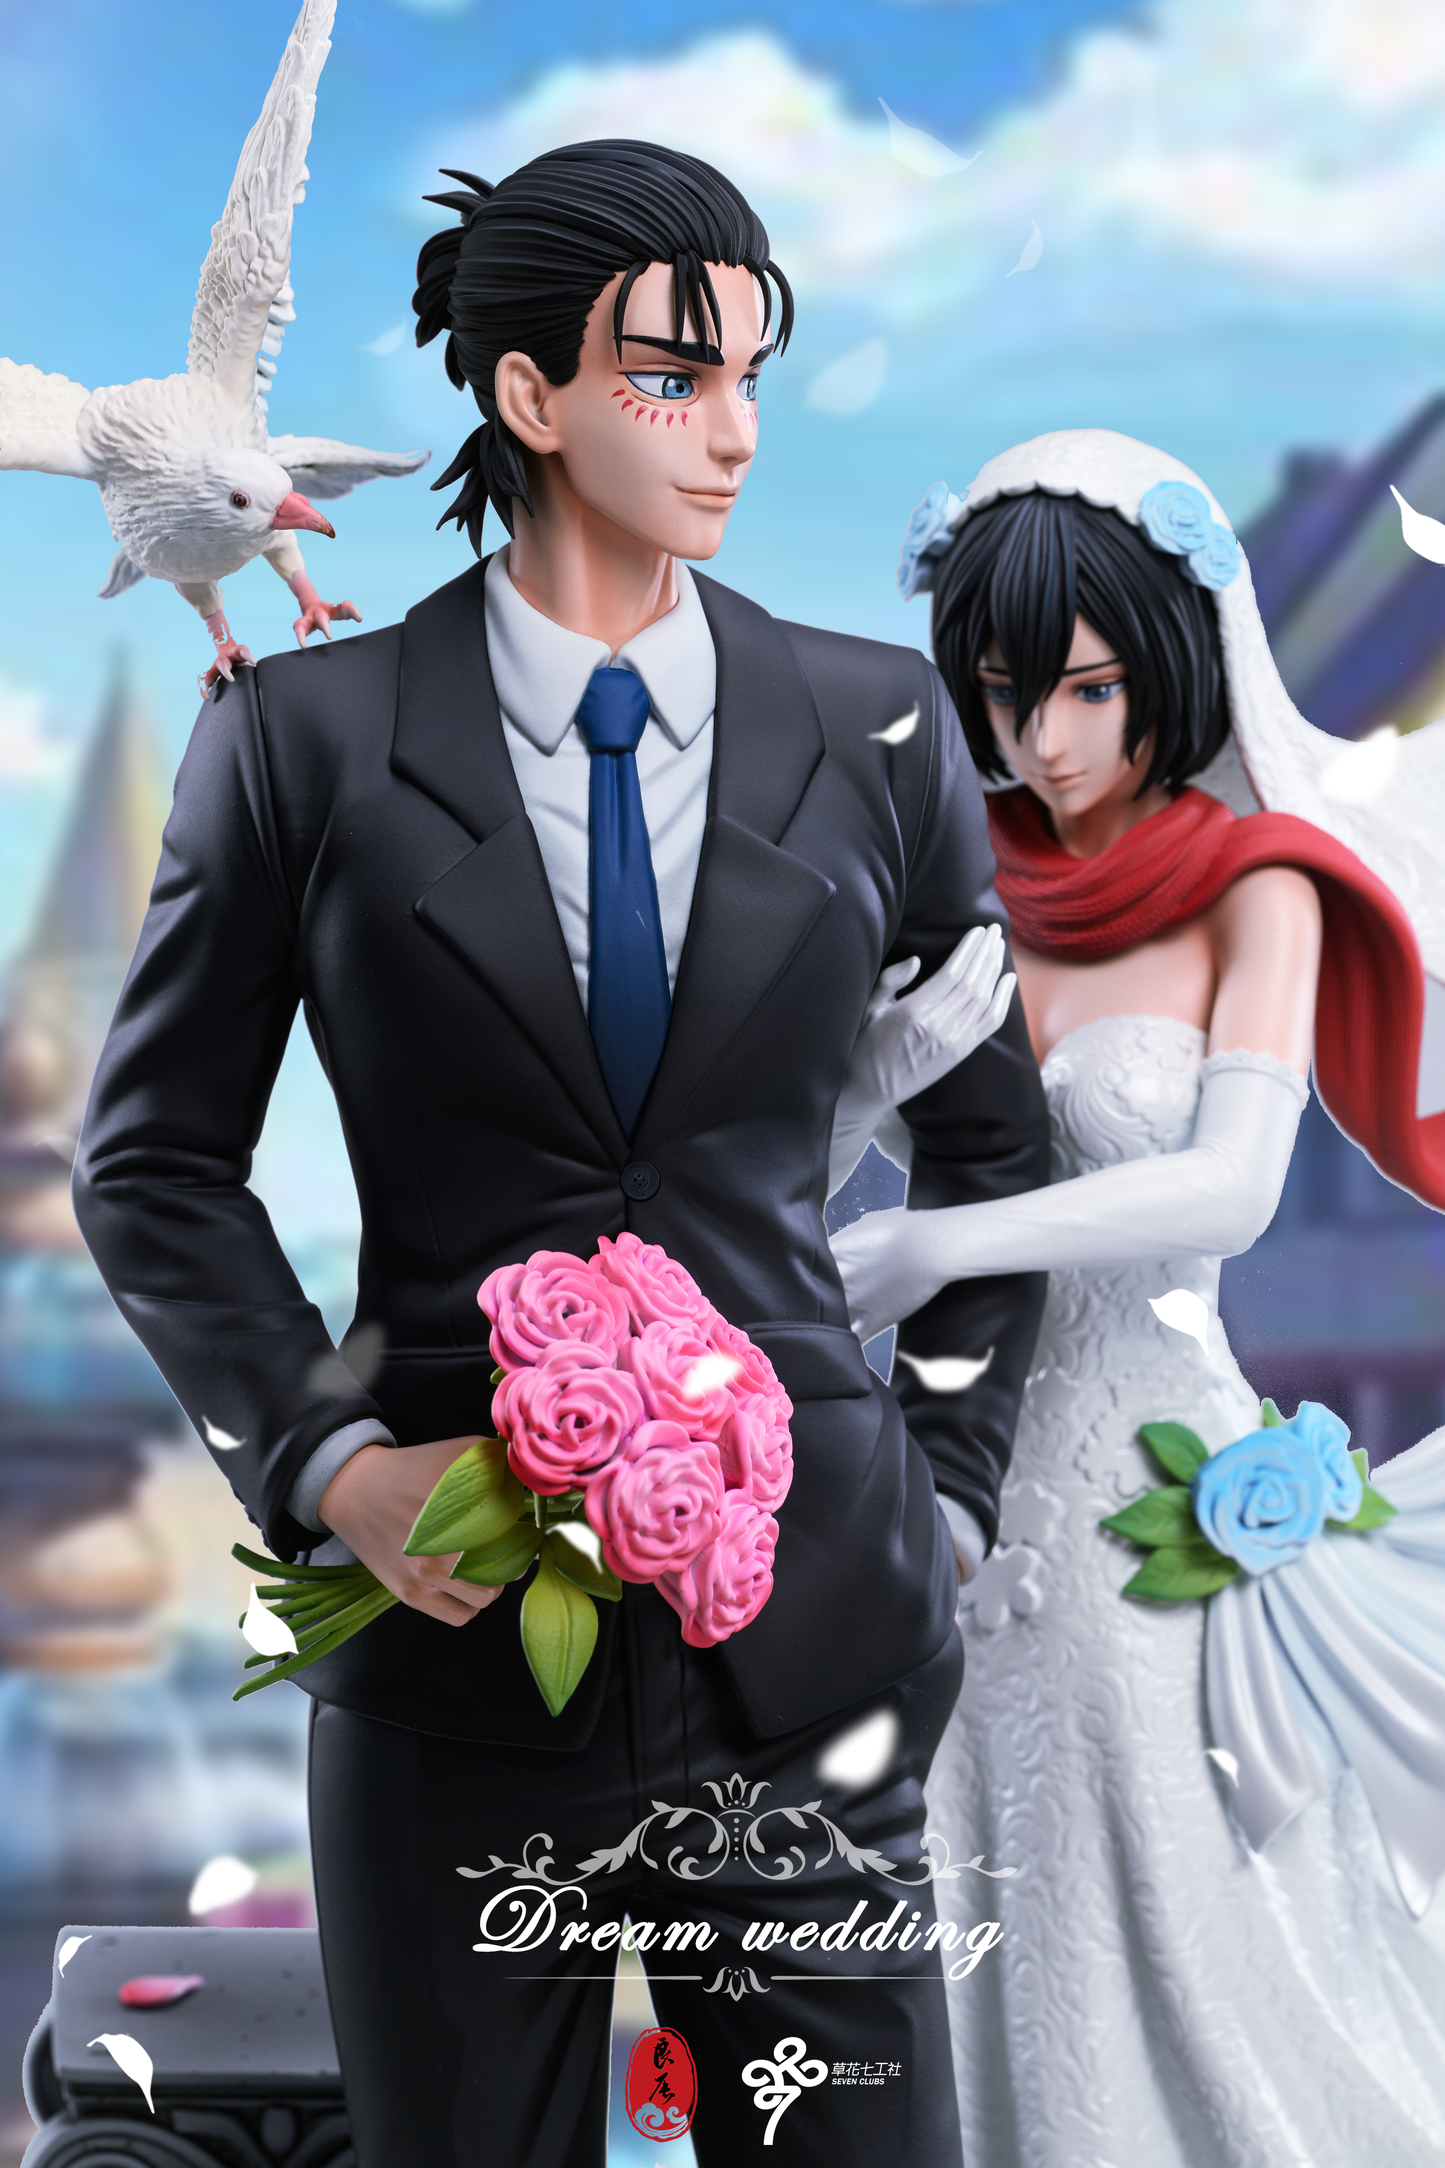 LC STUDIO – ATTACK ON TITAN: 11. EREN AND MIKASA’S DREAM WEDDING [PRE-ORDER]